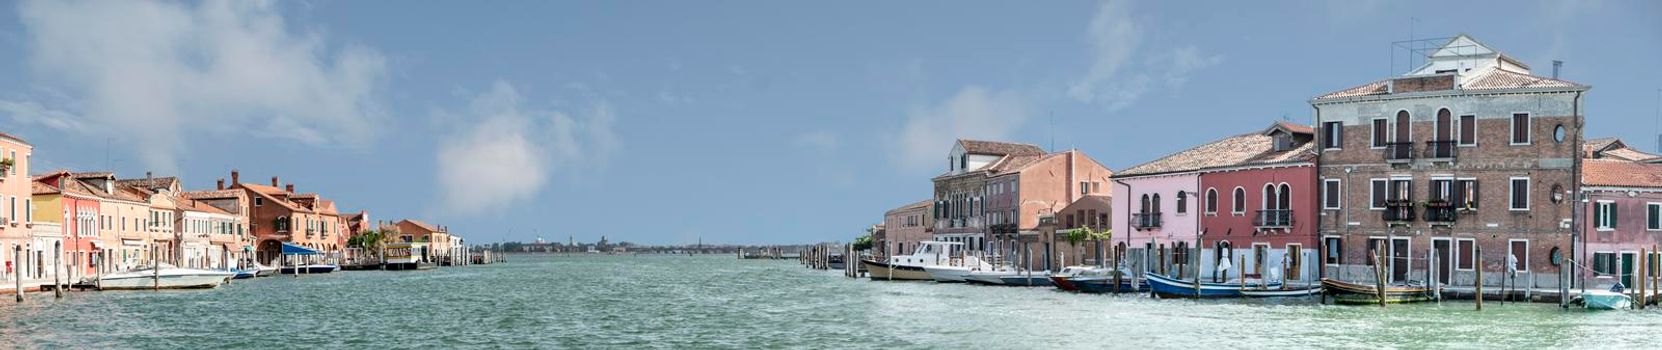 Overview of the Cannareggio canal in Murano, Venice